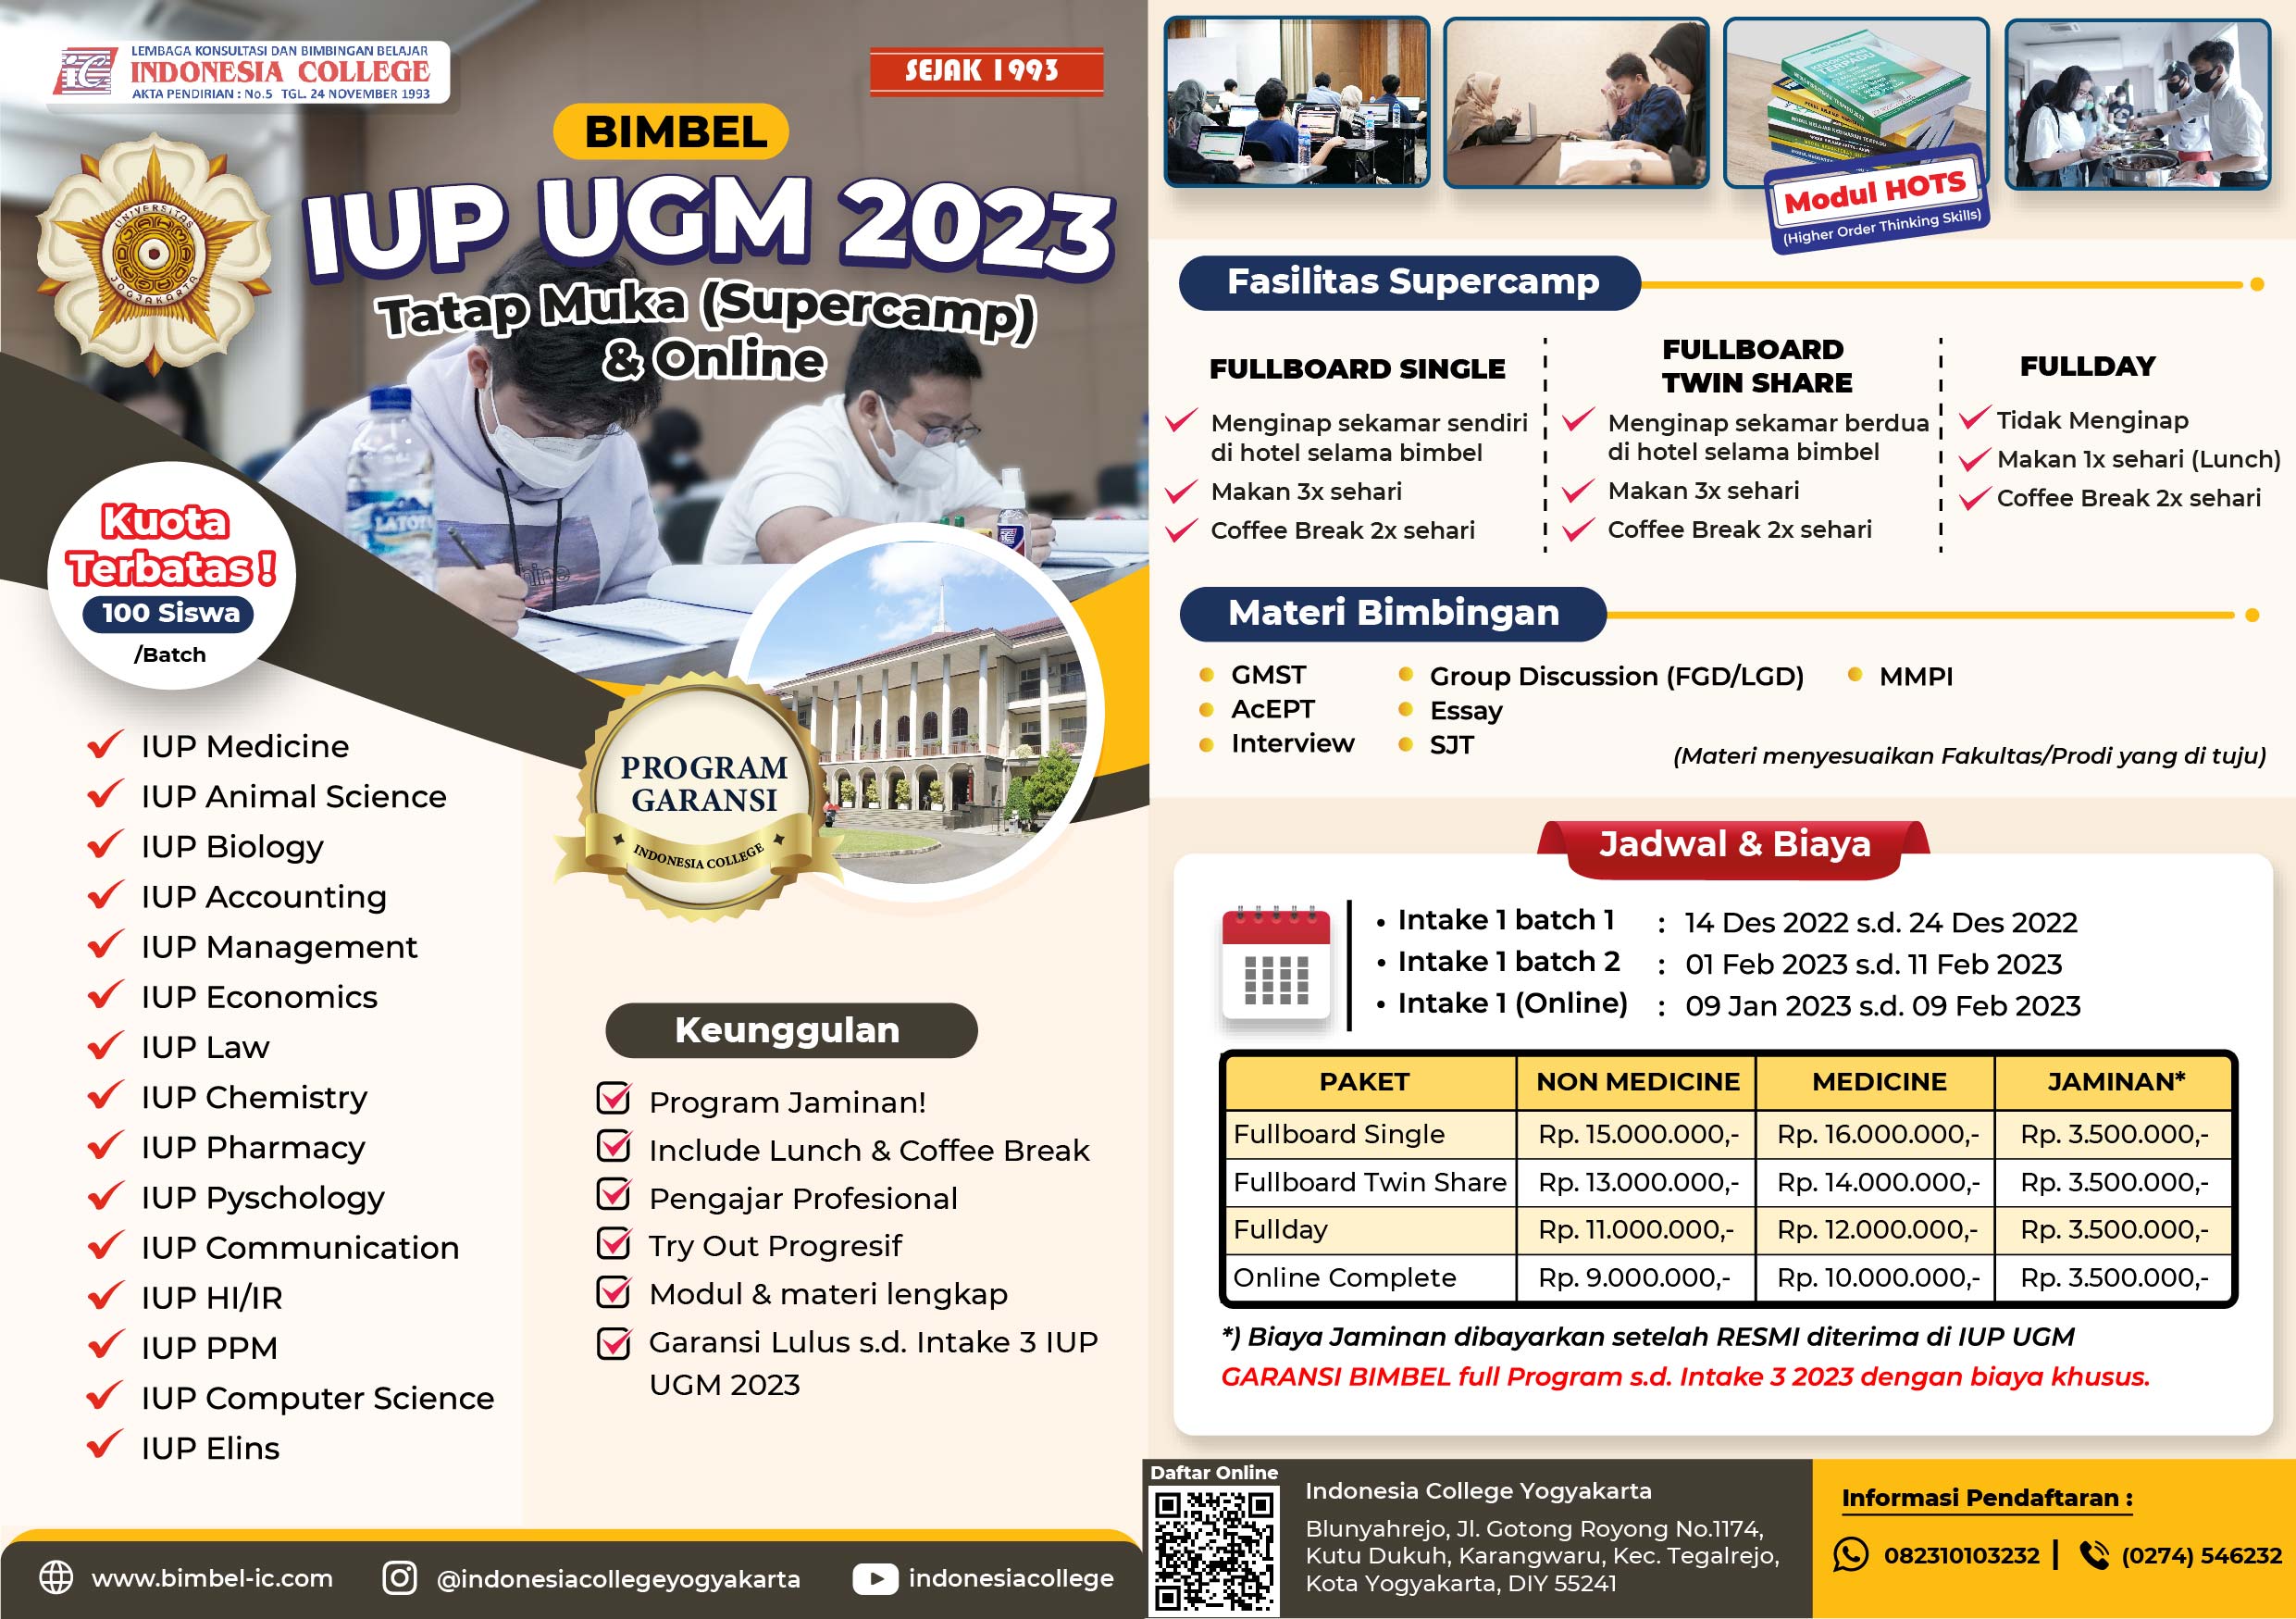 Bimbel IUP UGM 2023